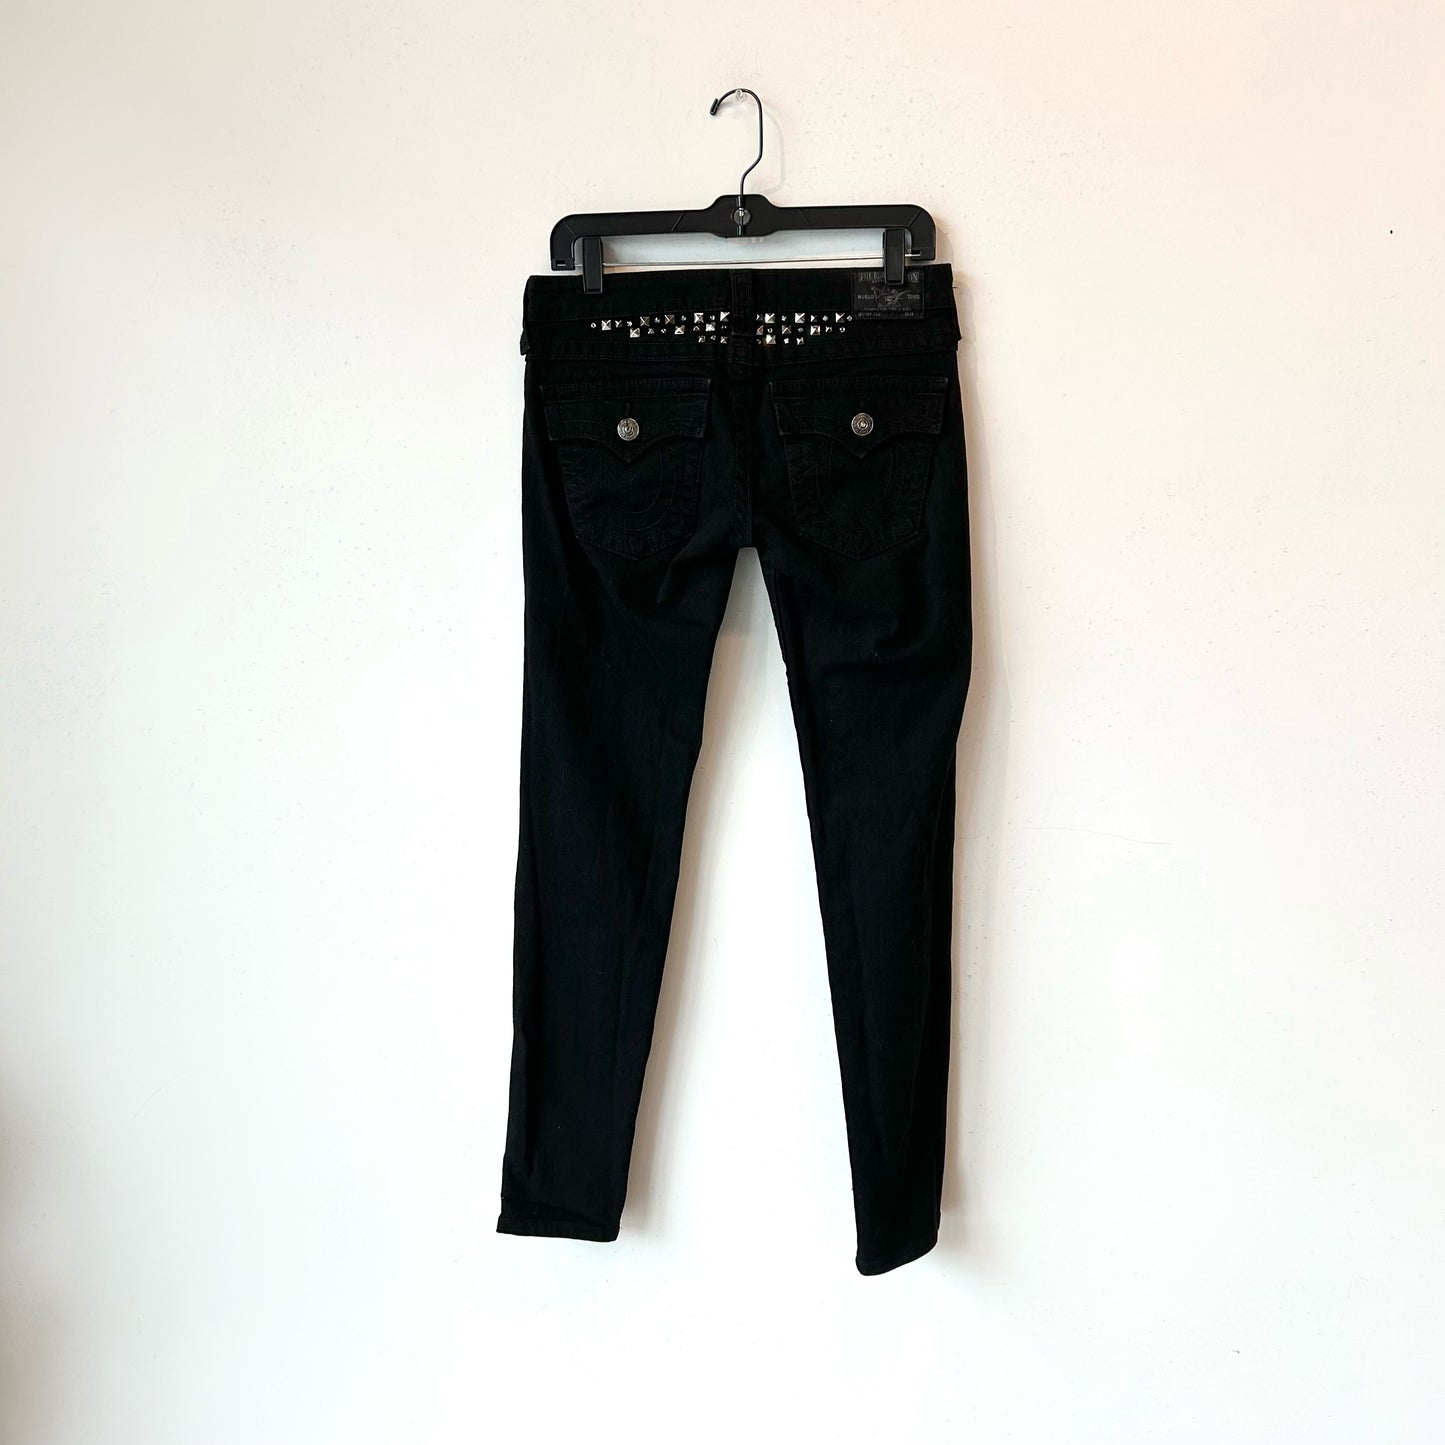 M/27 Black Rhinestones True Religion Jeans